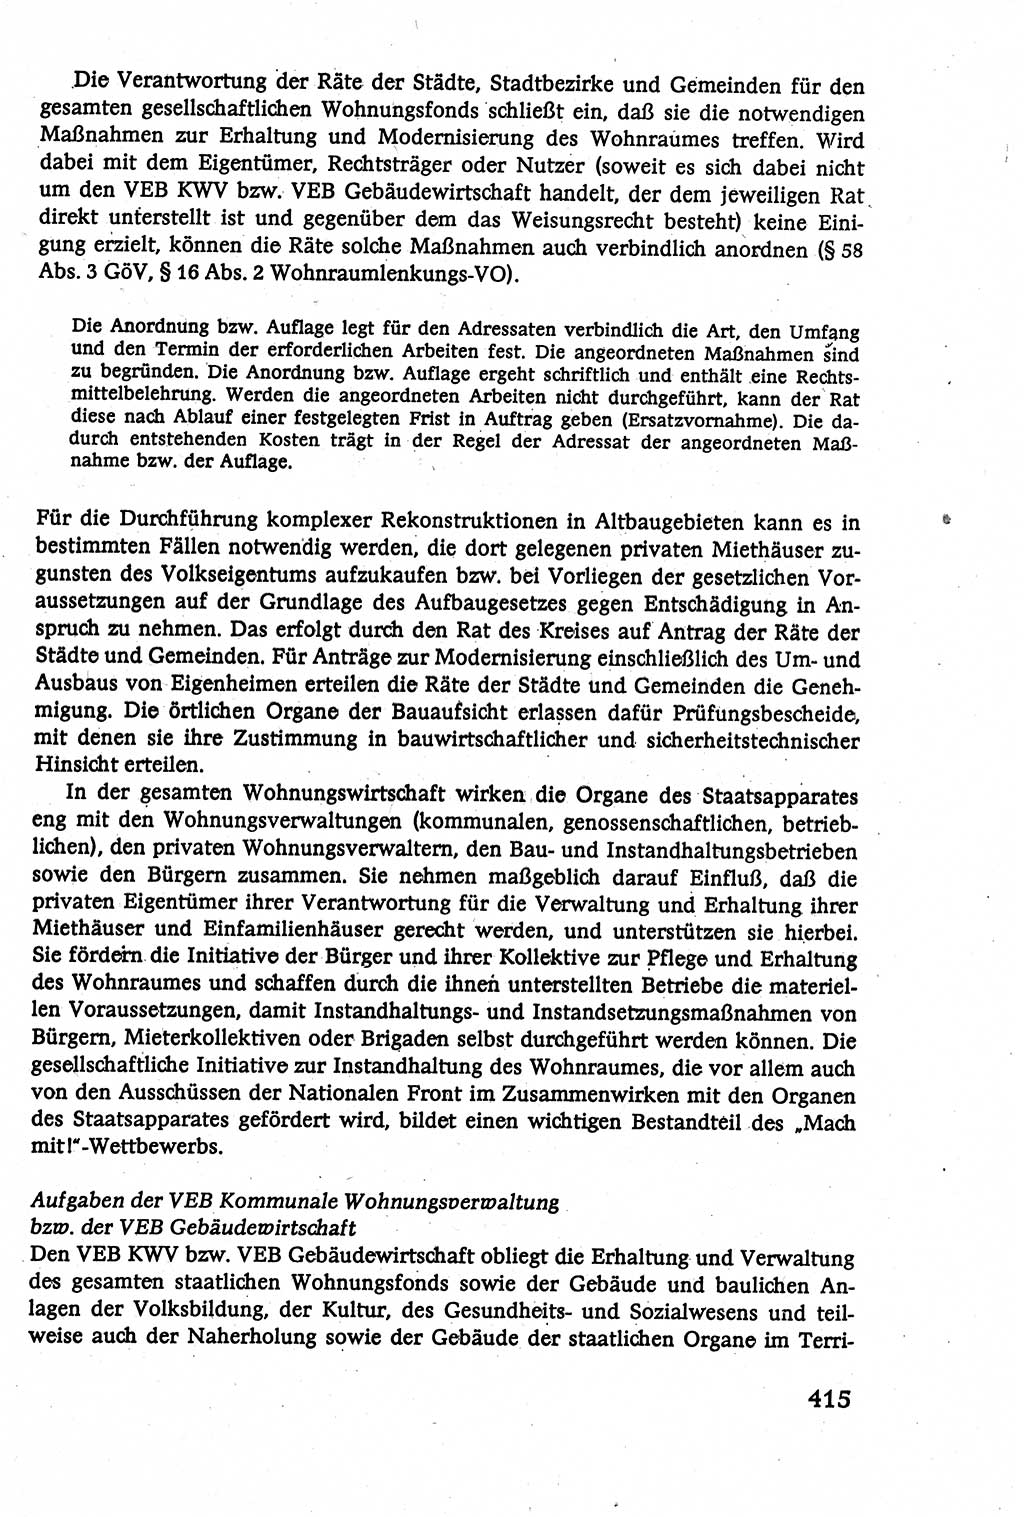 Verwaltungsrecht [Deutsche Demokratische Republik (DDR)], Lehrbuch 1979, Seite 415 (Verw.-R. DDR Lb. 1979, S. 415)